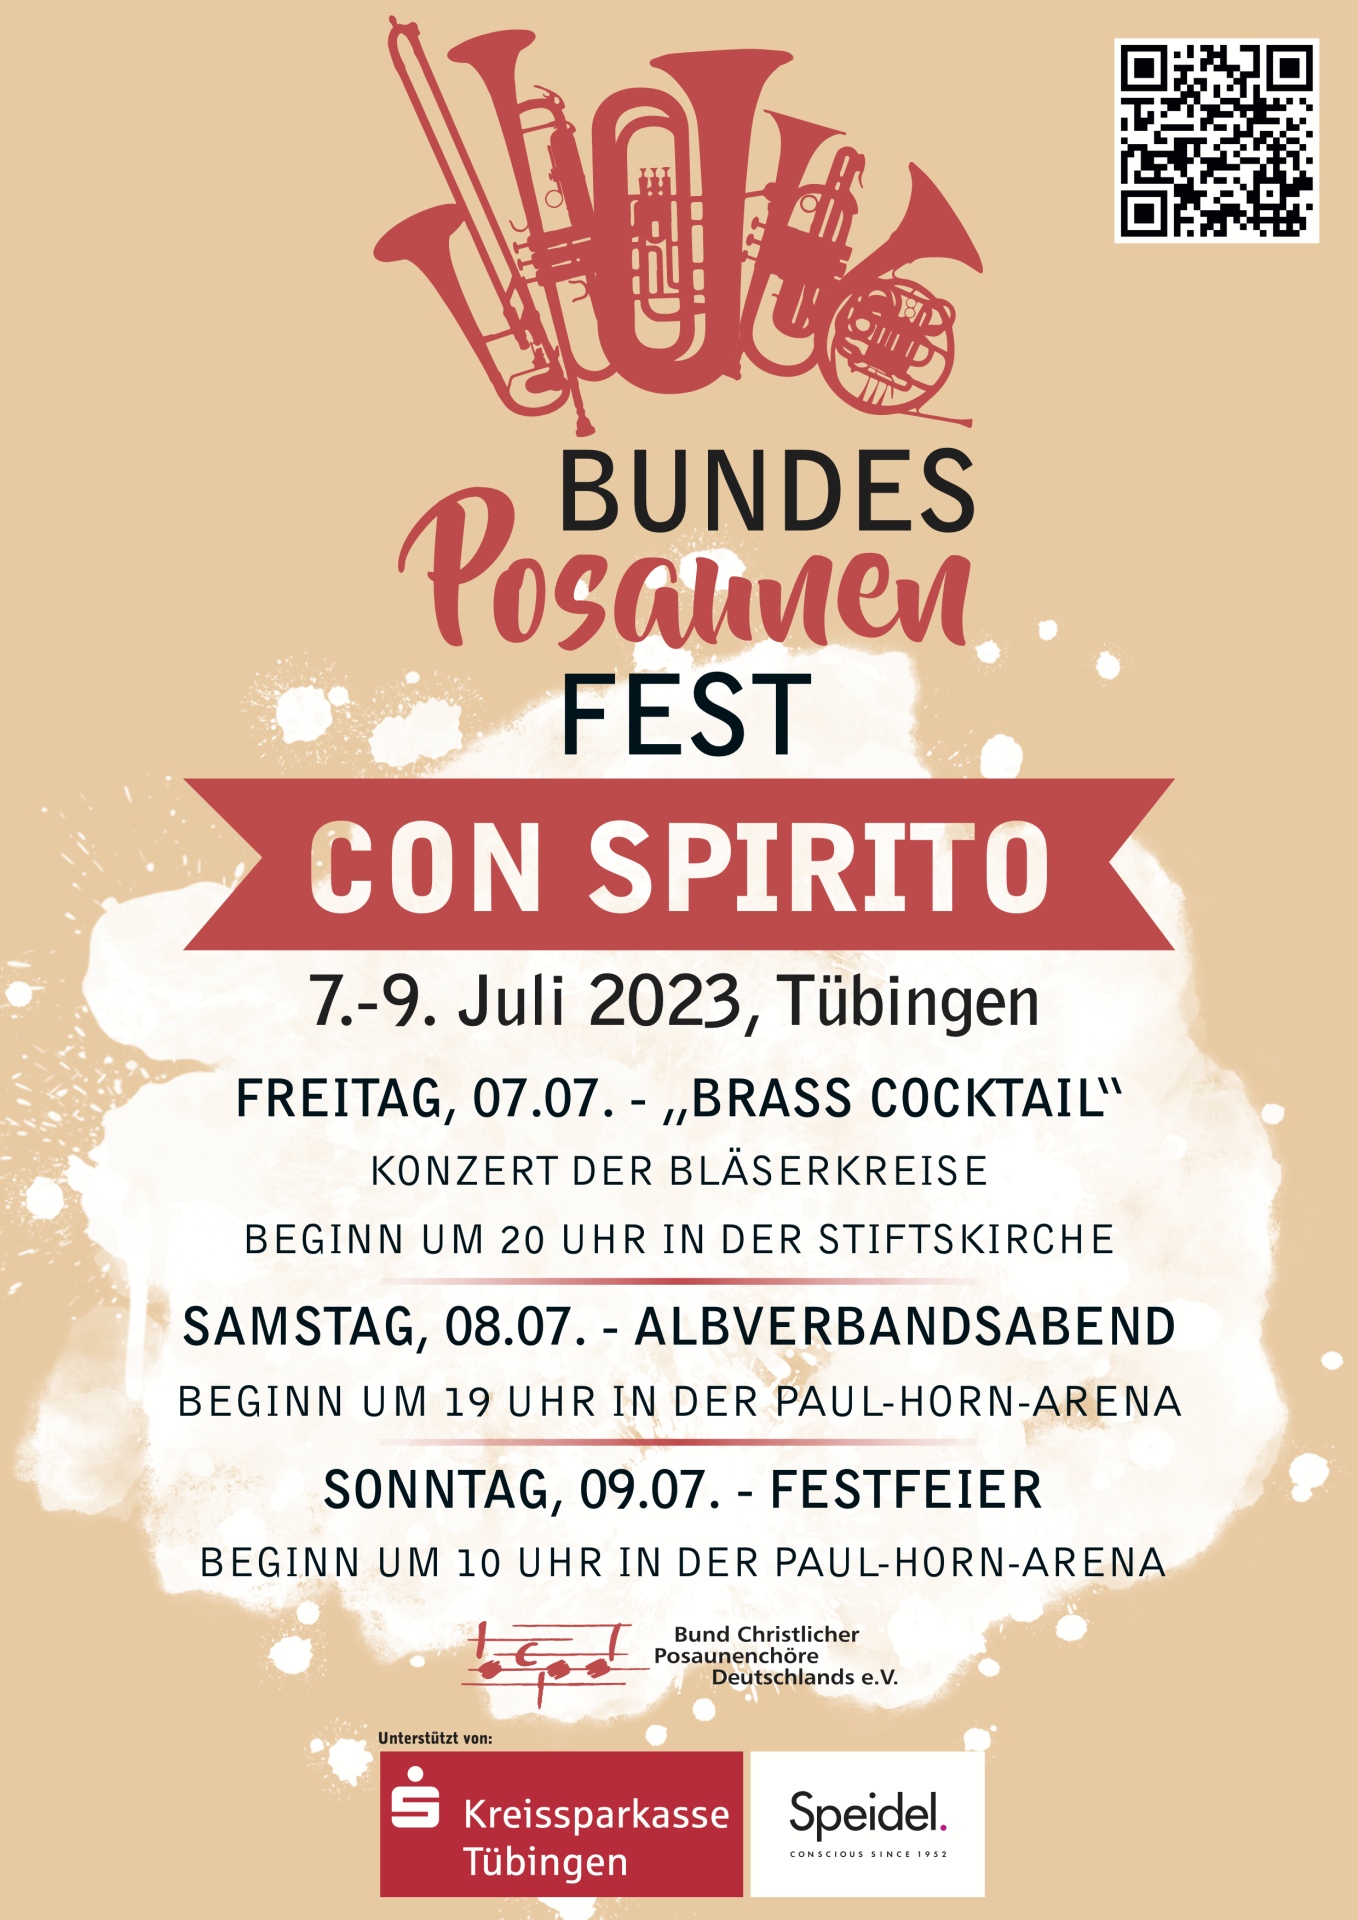 Bundesposaunenfest in Tübingen